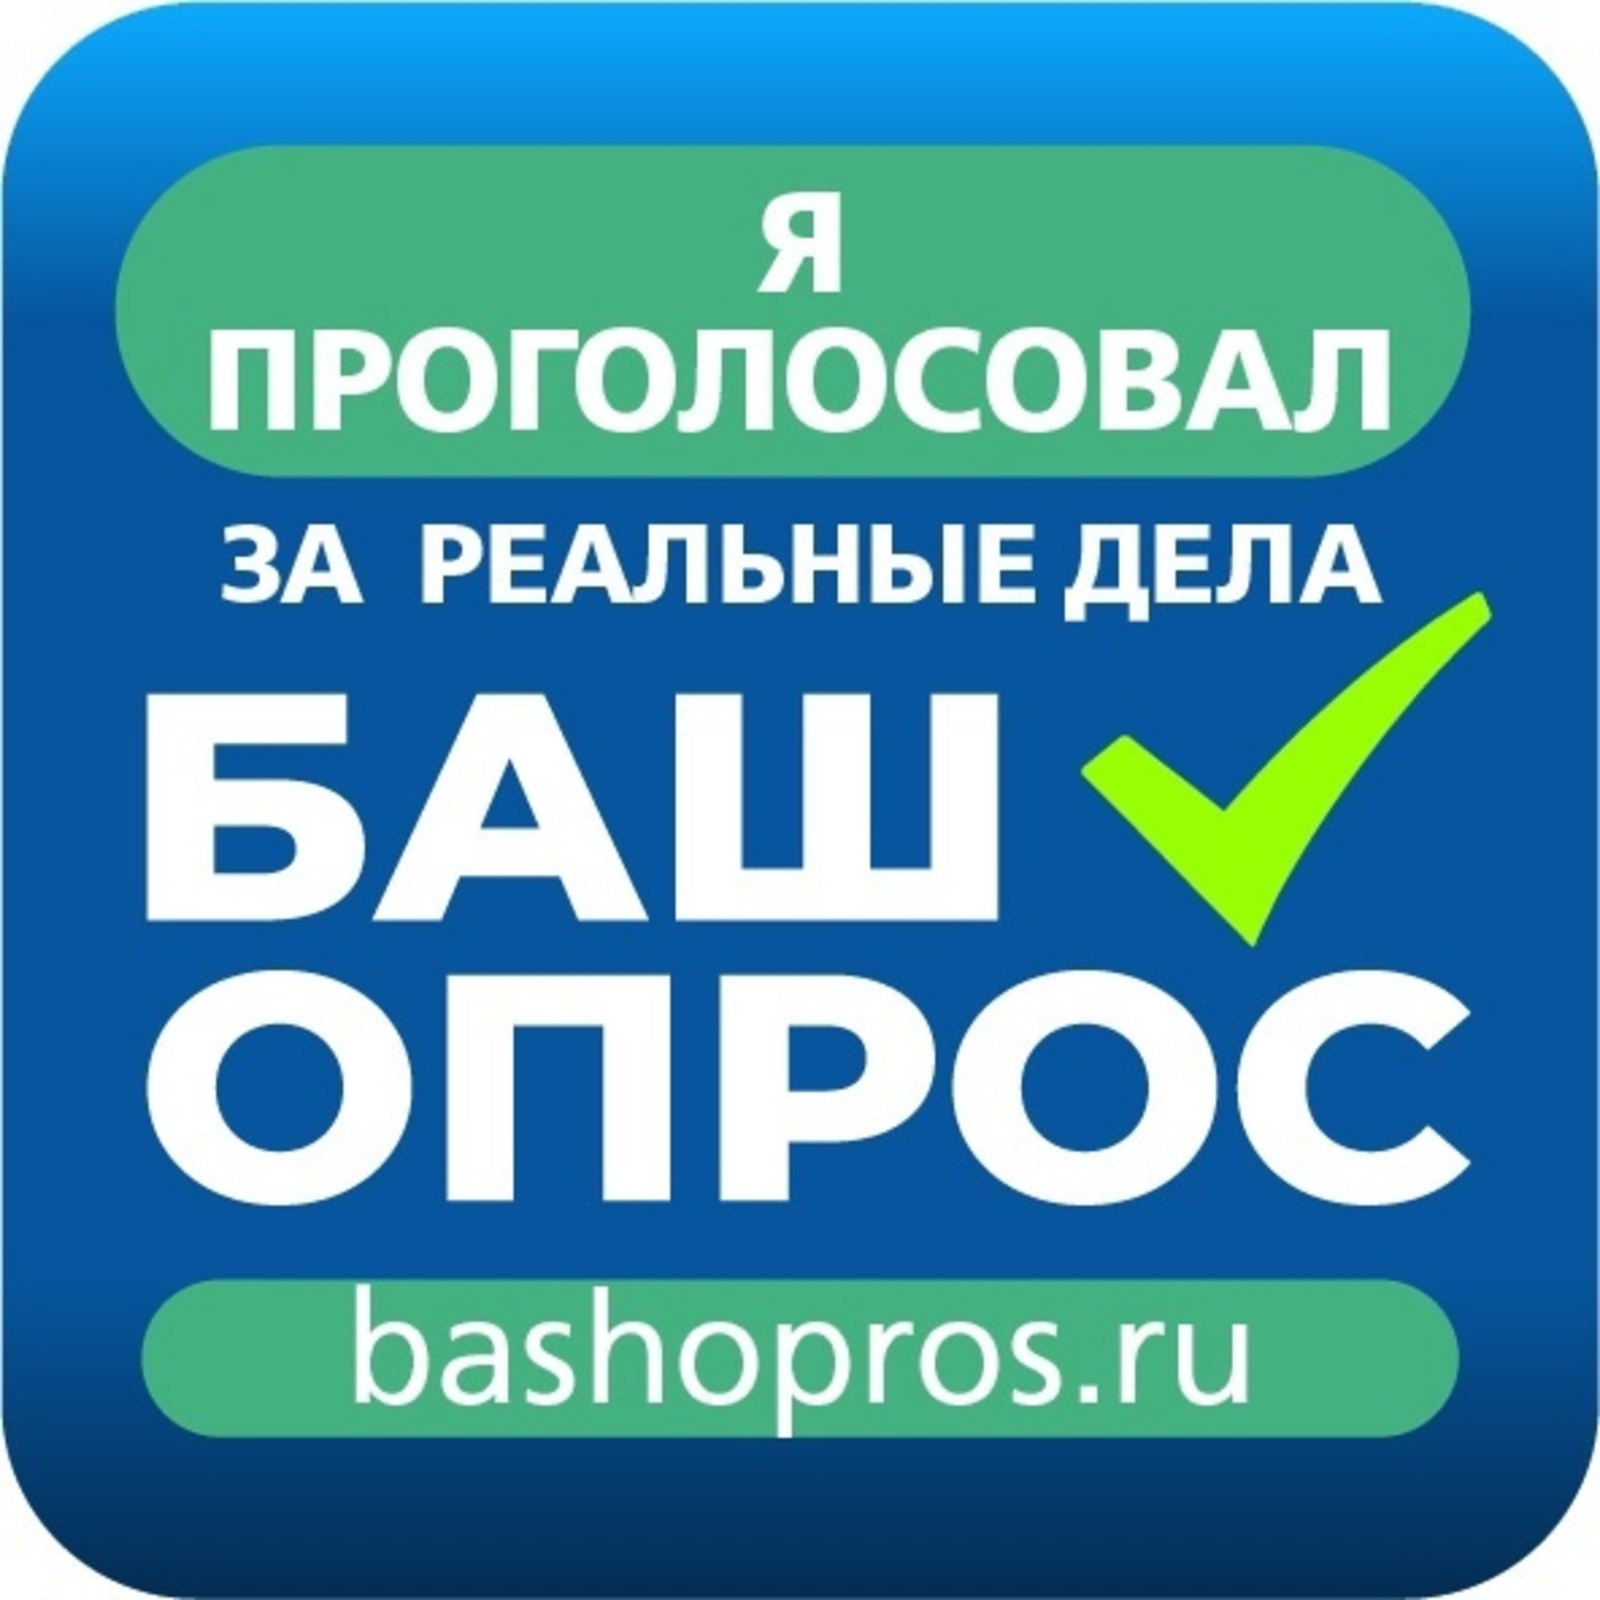 Жители Башкирии голосуют за благоустройство объектов